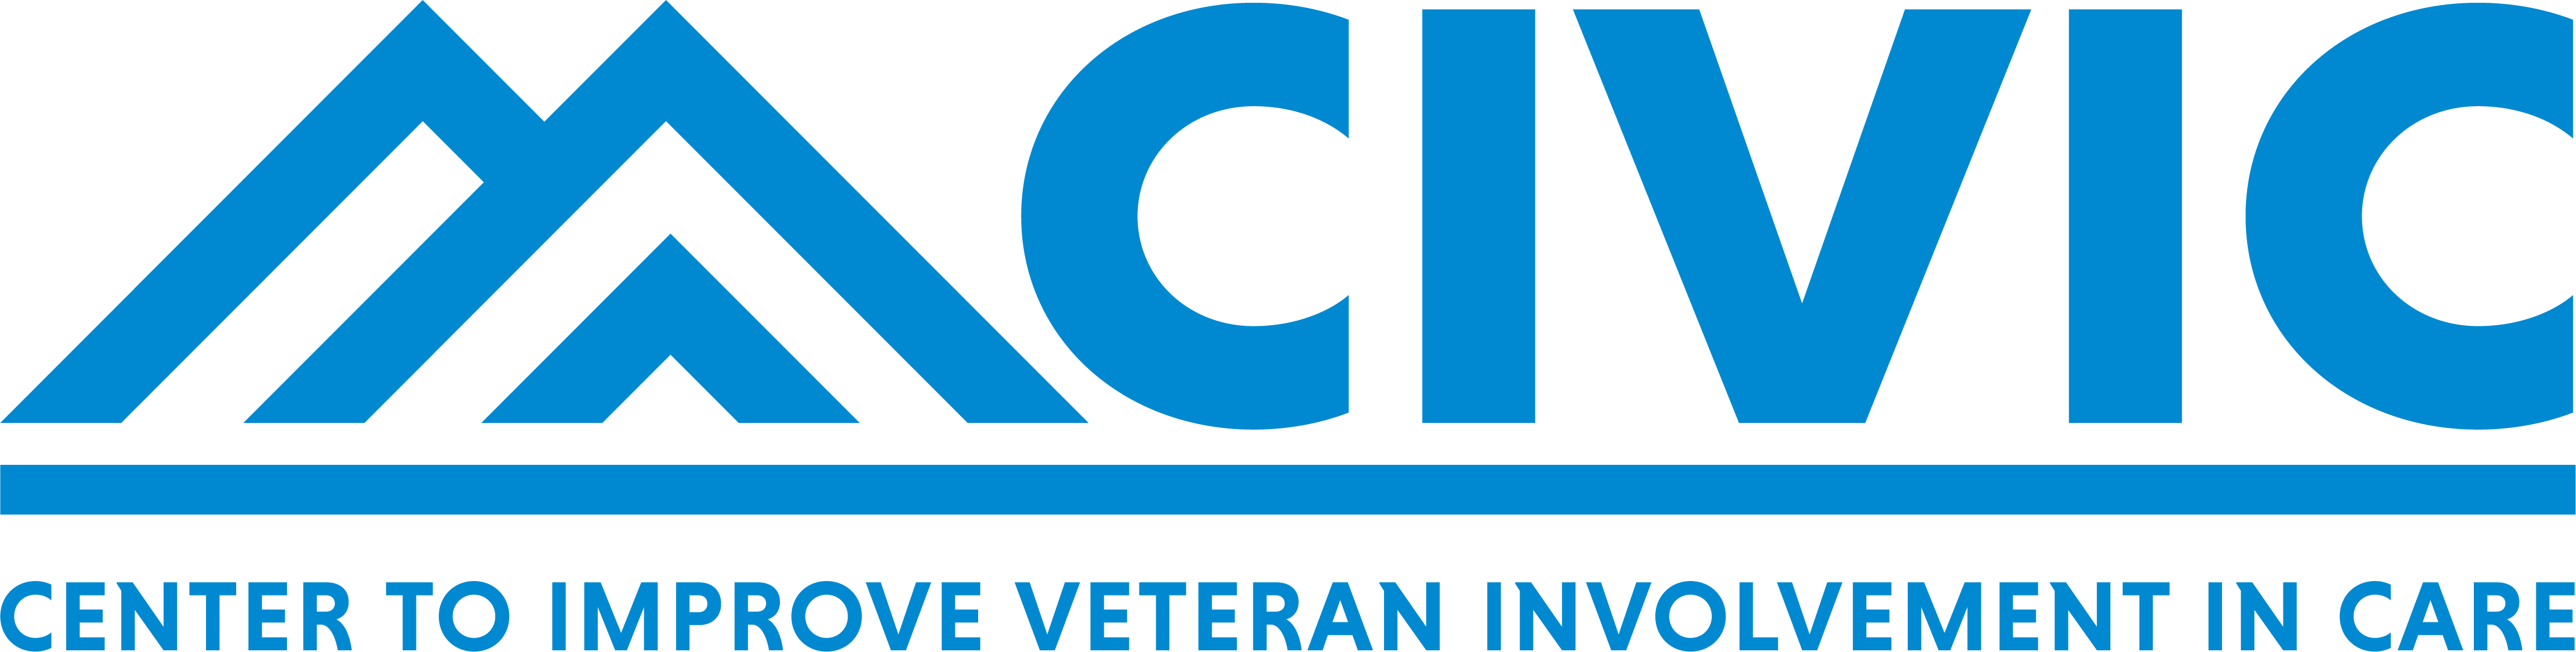 Center to Improve Veteran Involvement in Care (CIVIC)